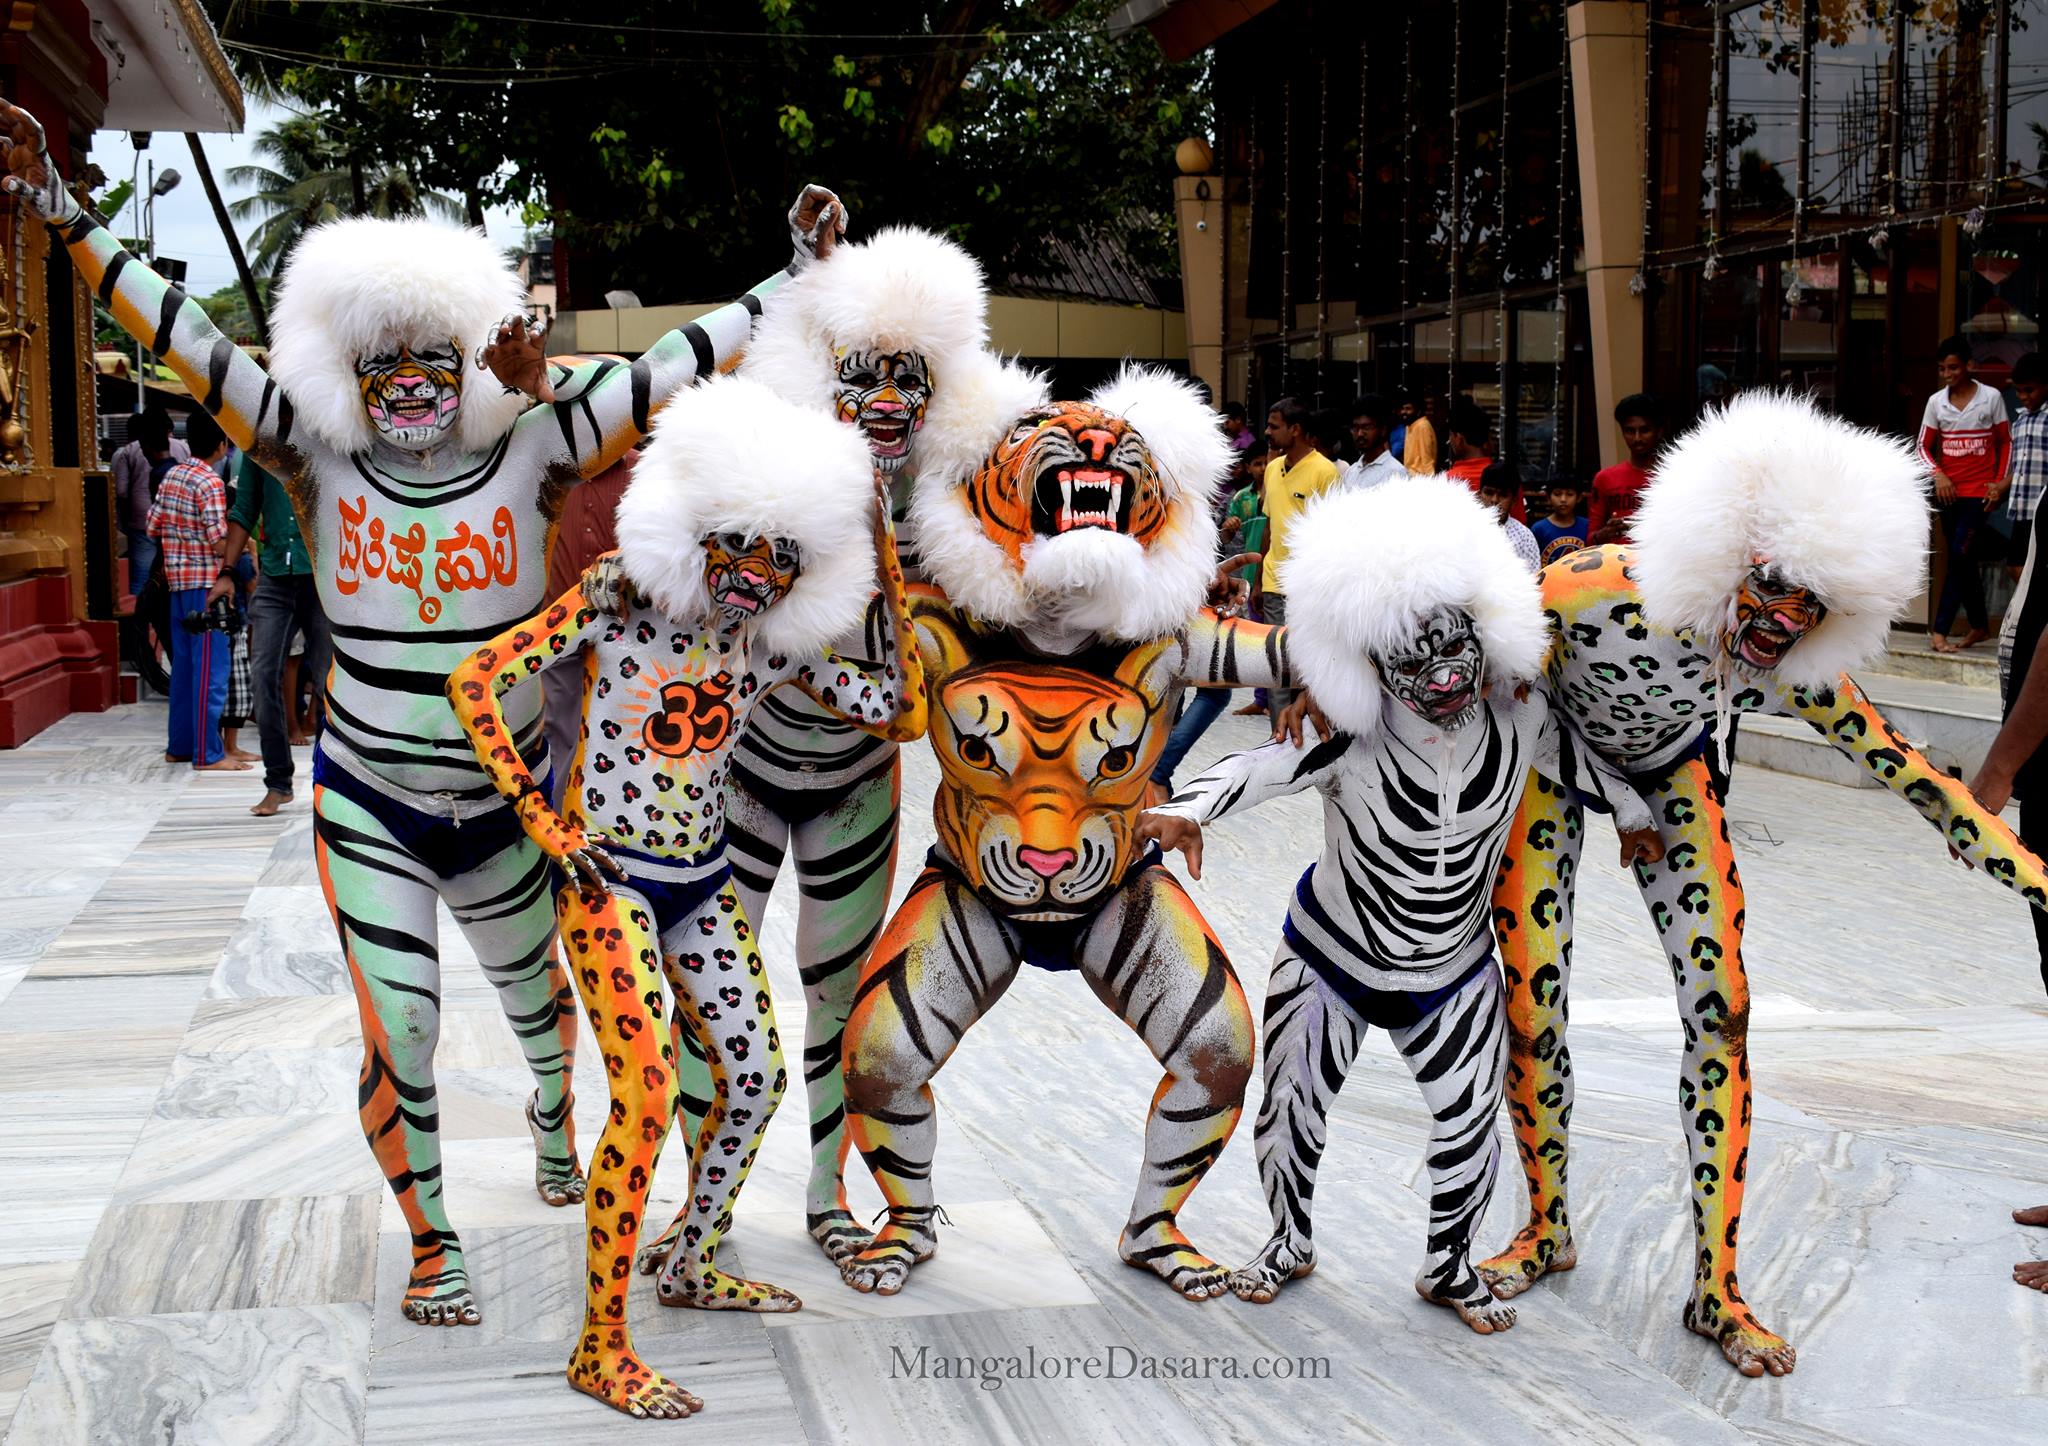 Tiger Dance Mangalore Dasara 2017